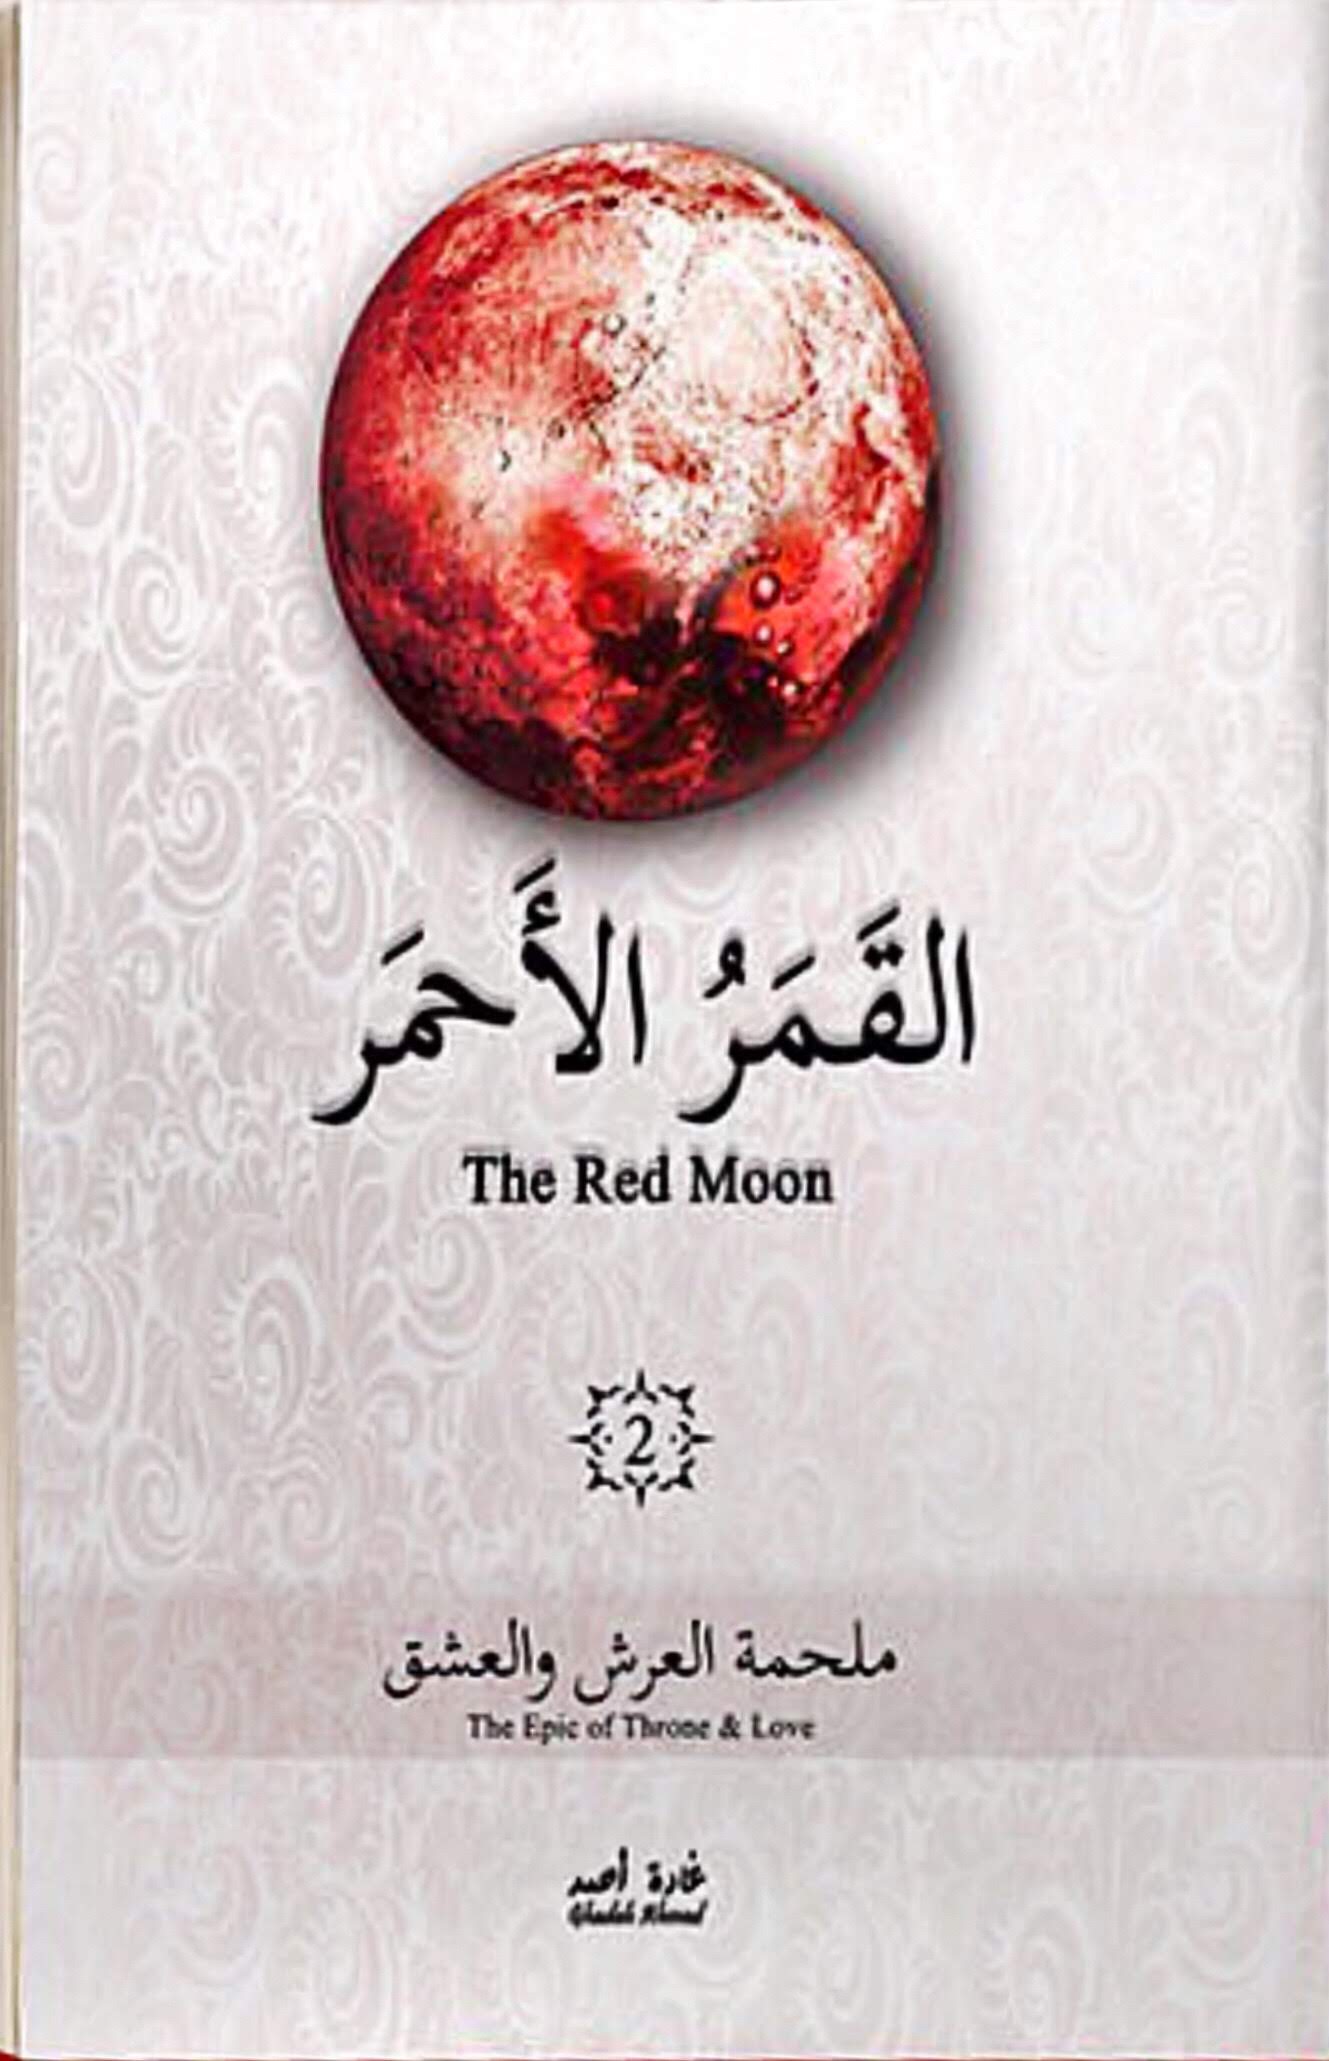 تحميل رواية القمر الأحمر الجزء الثاني كامل pdf